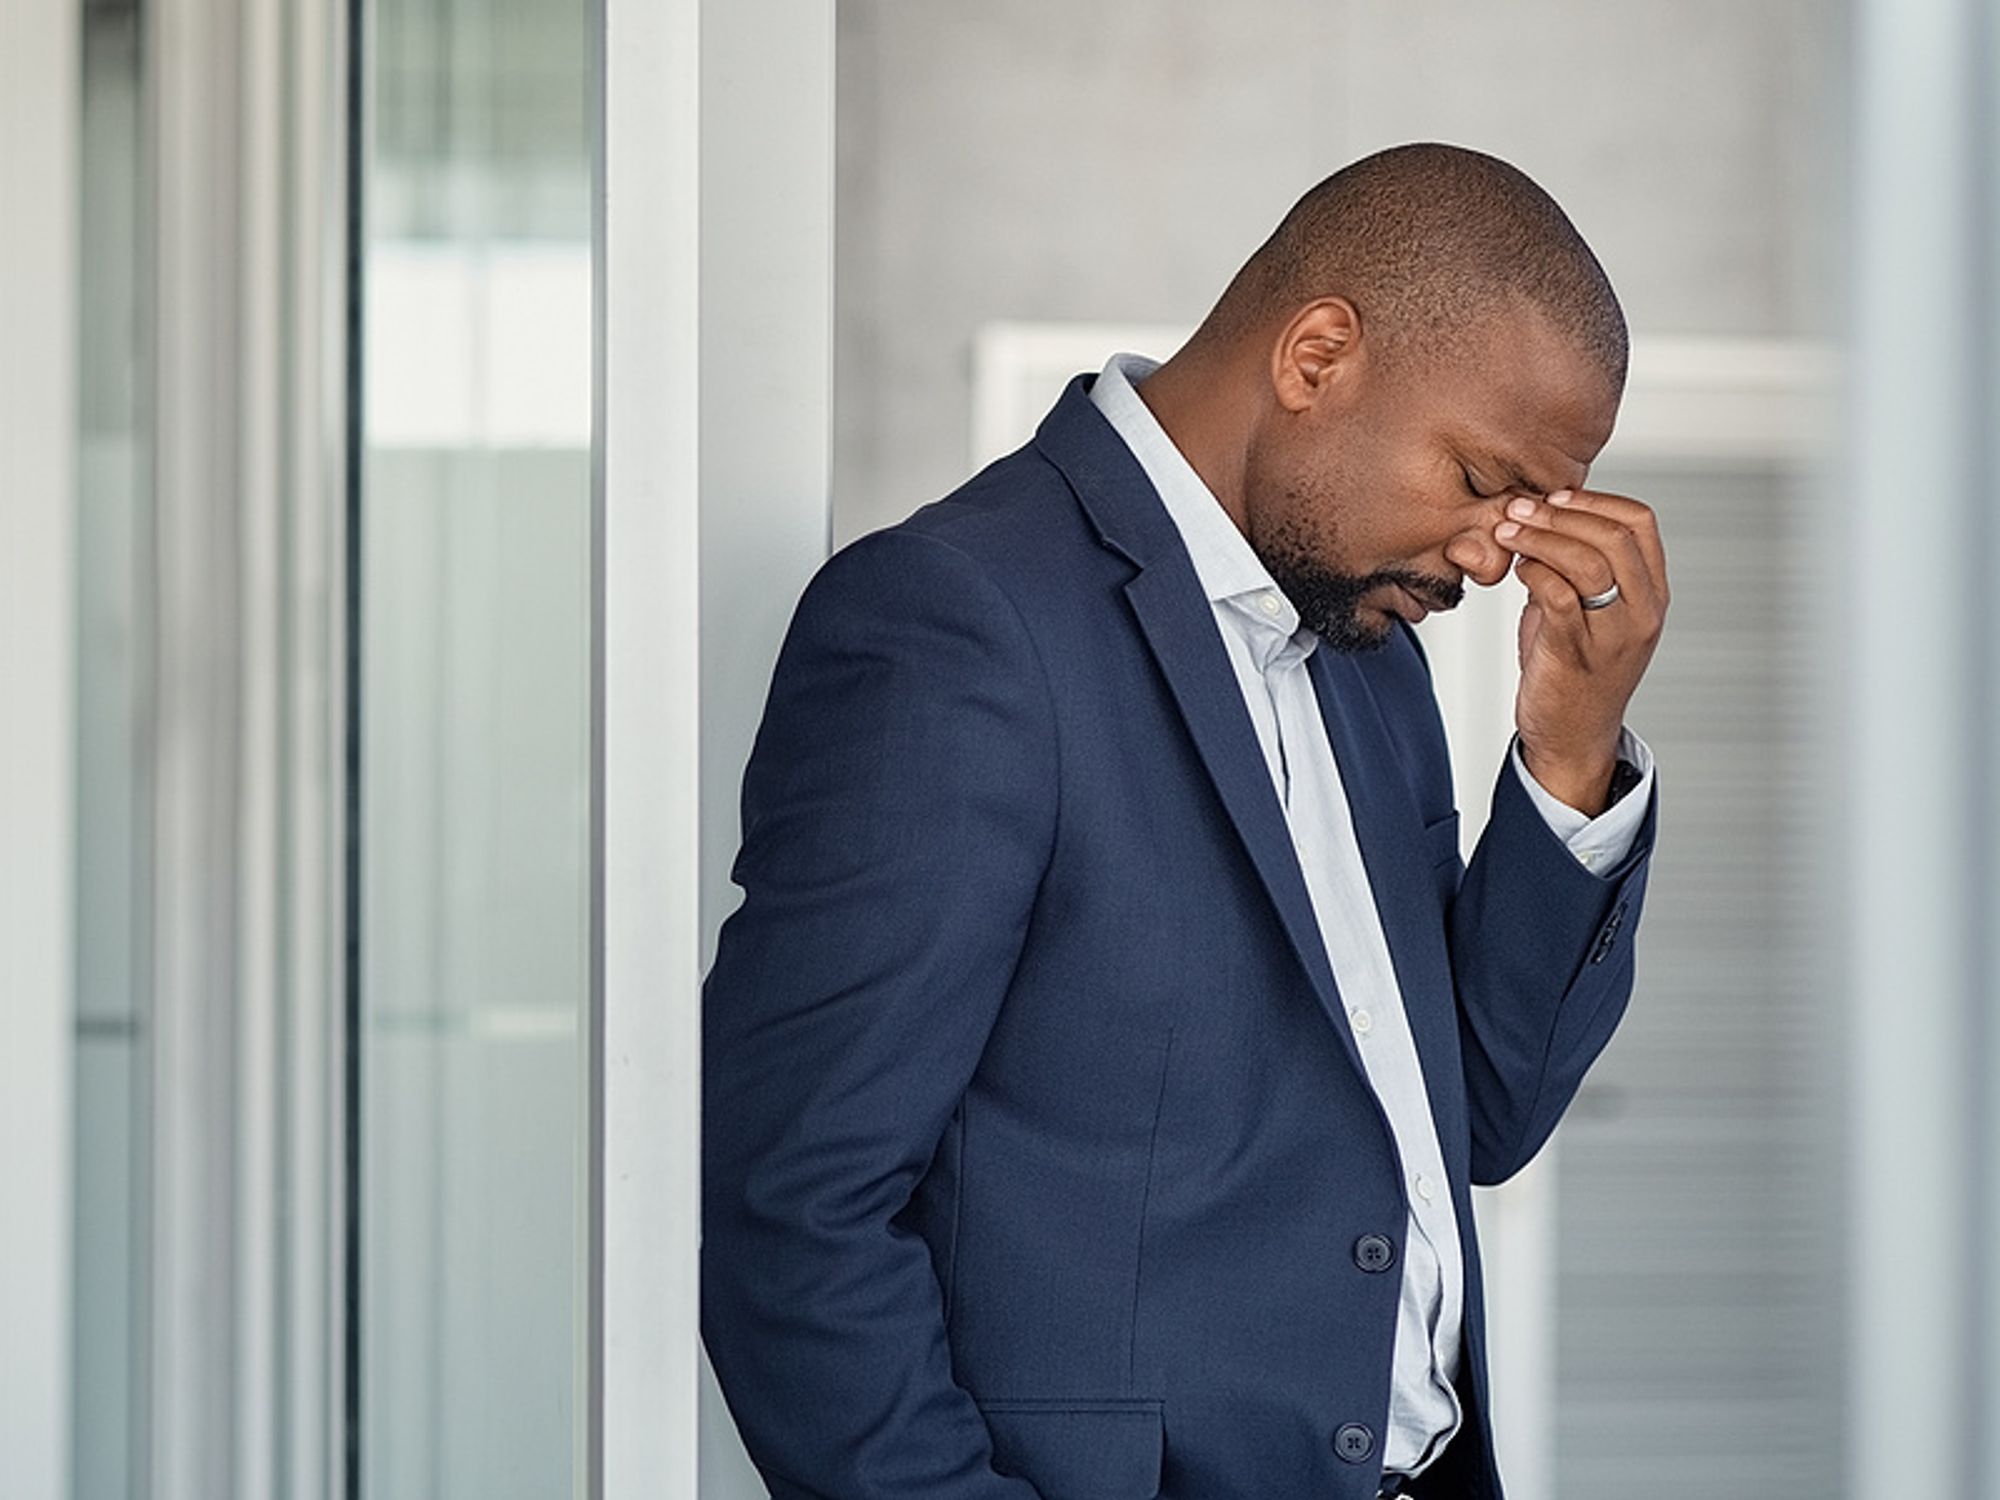 Executive experiences burnout at work